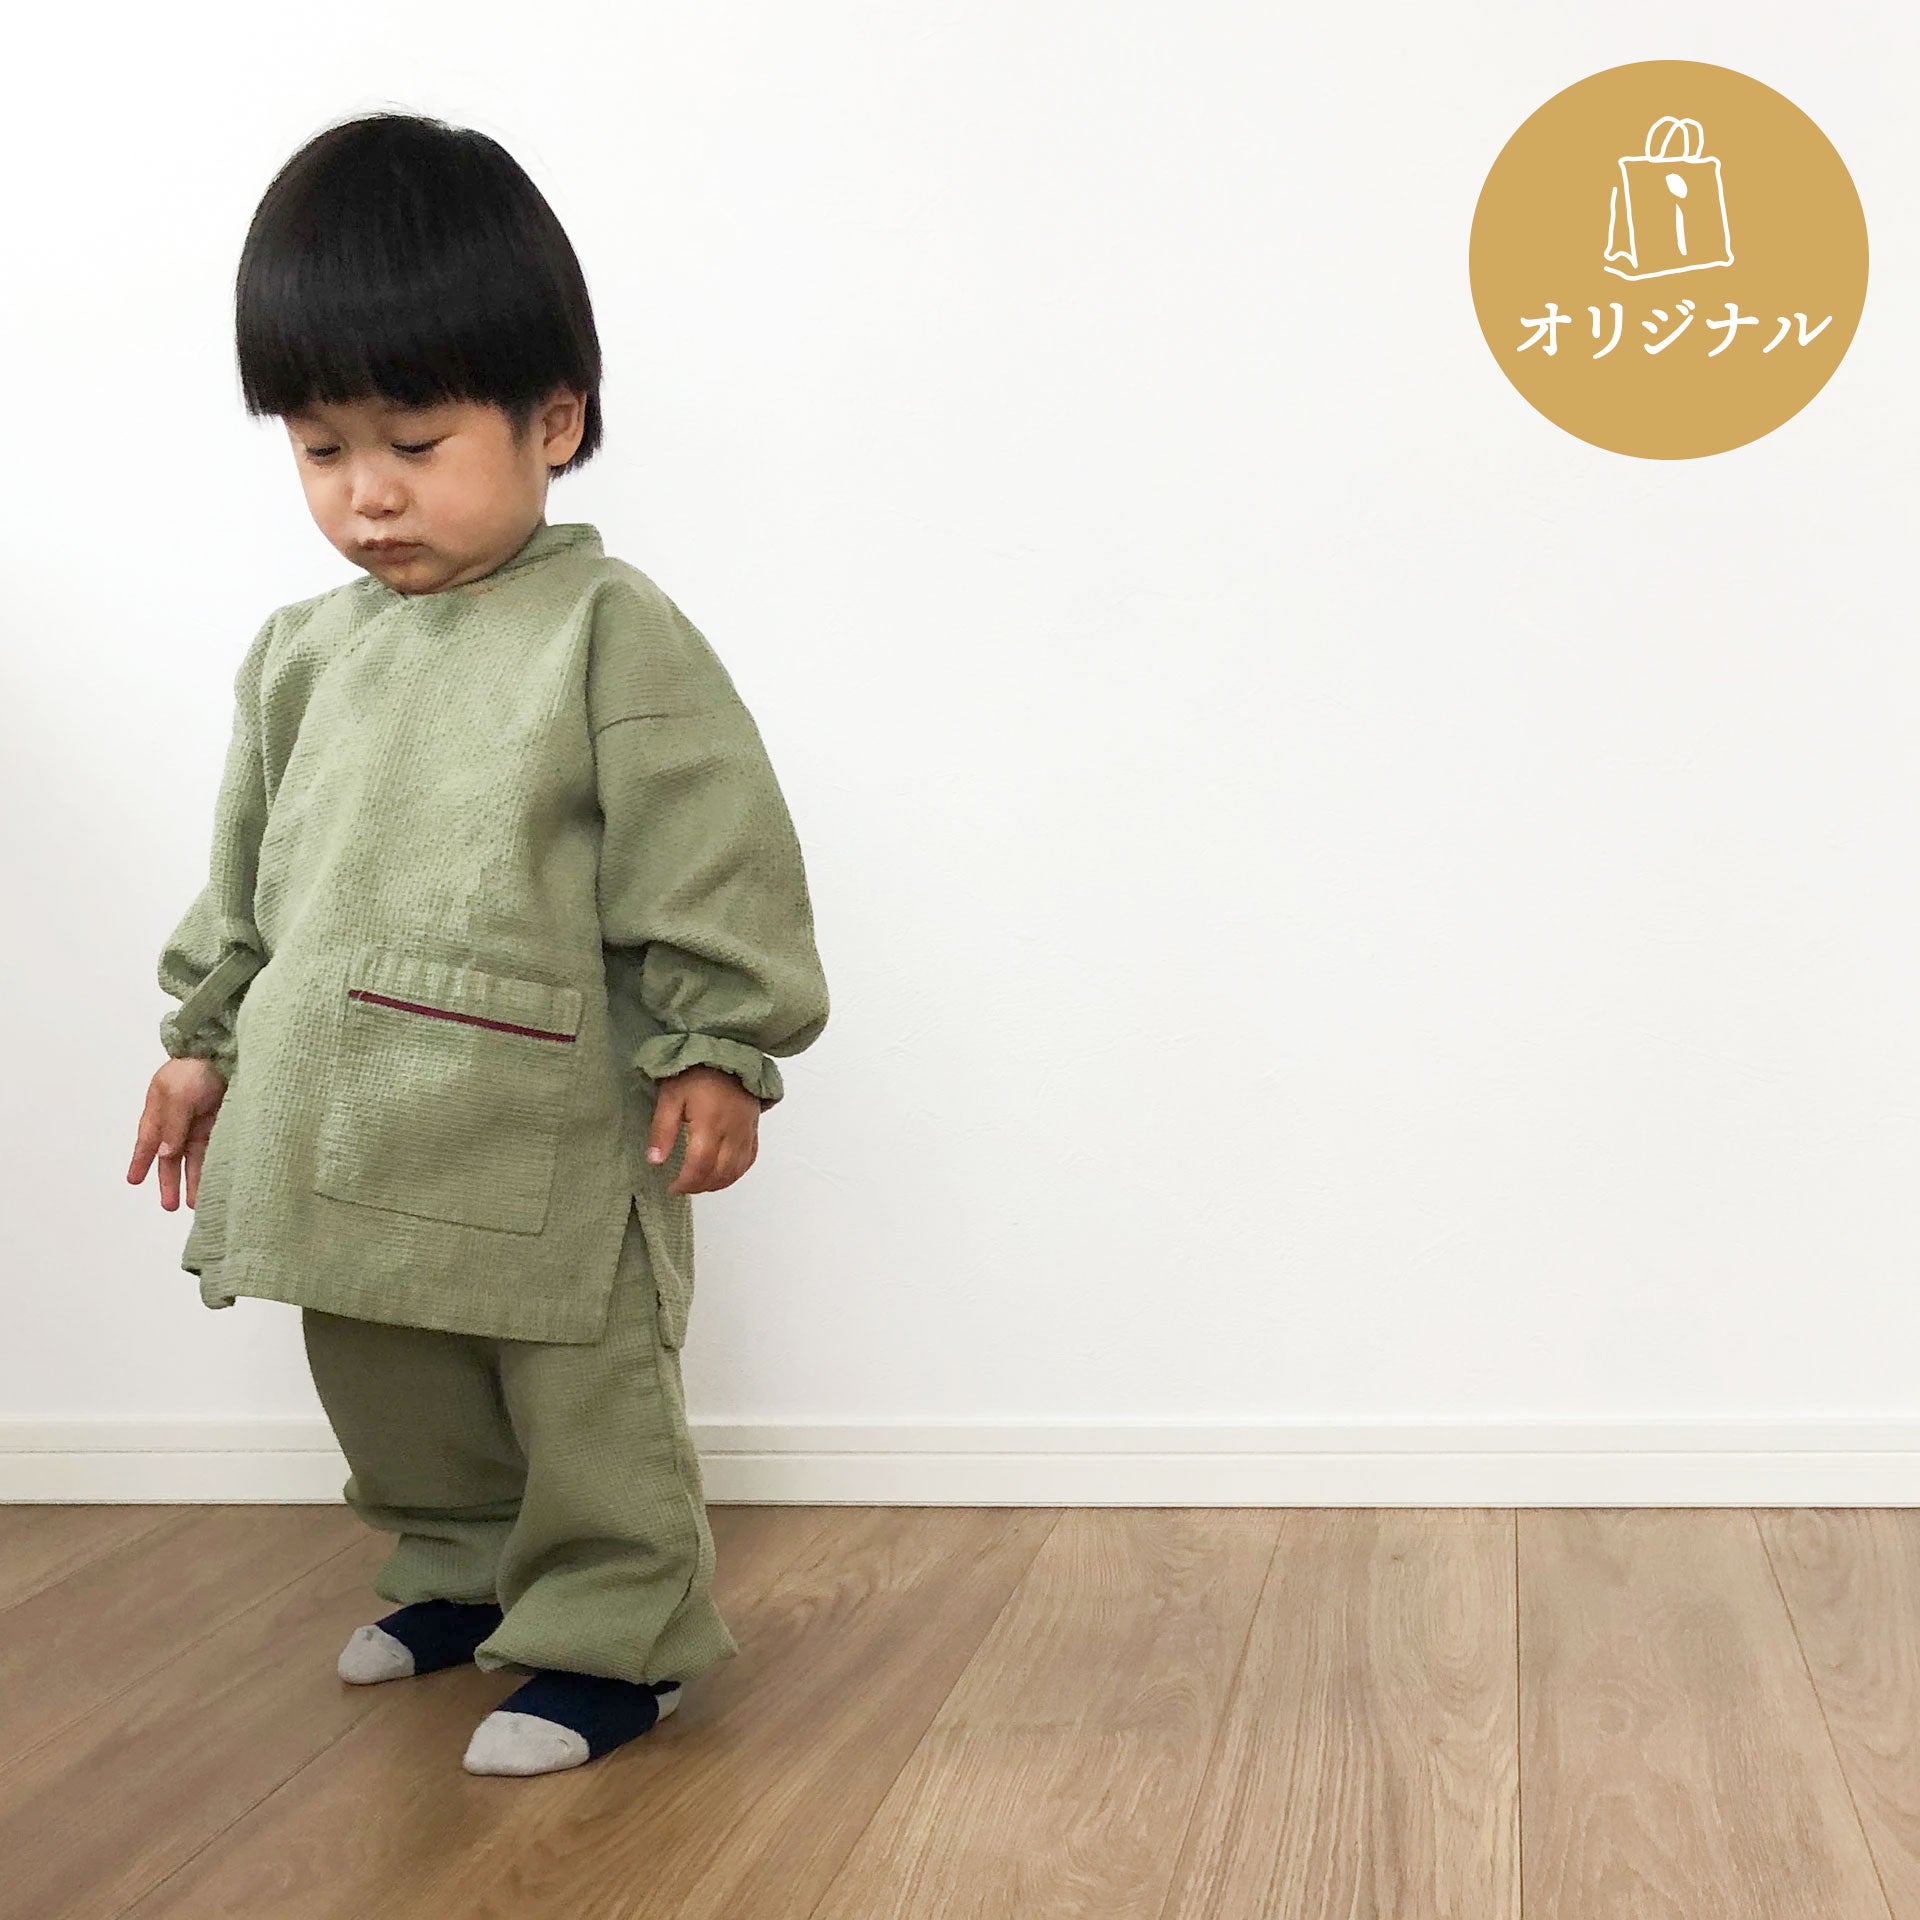 キッズ やわらかワッフル素材のルームウェア 作務衣 – ichinobo セレクト オンラインショップ